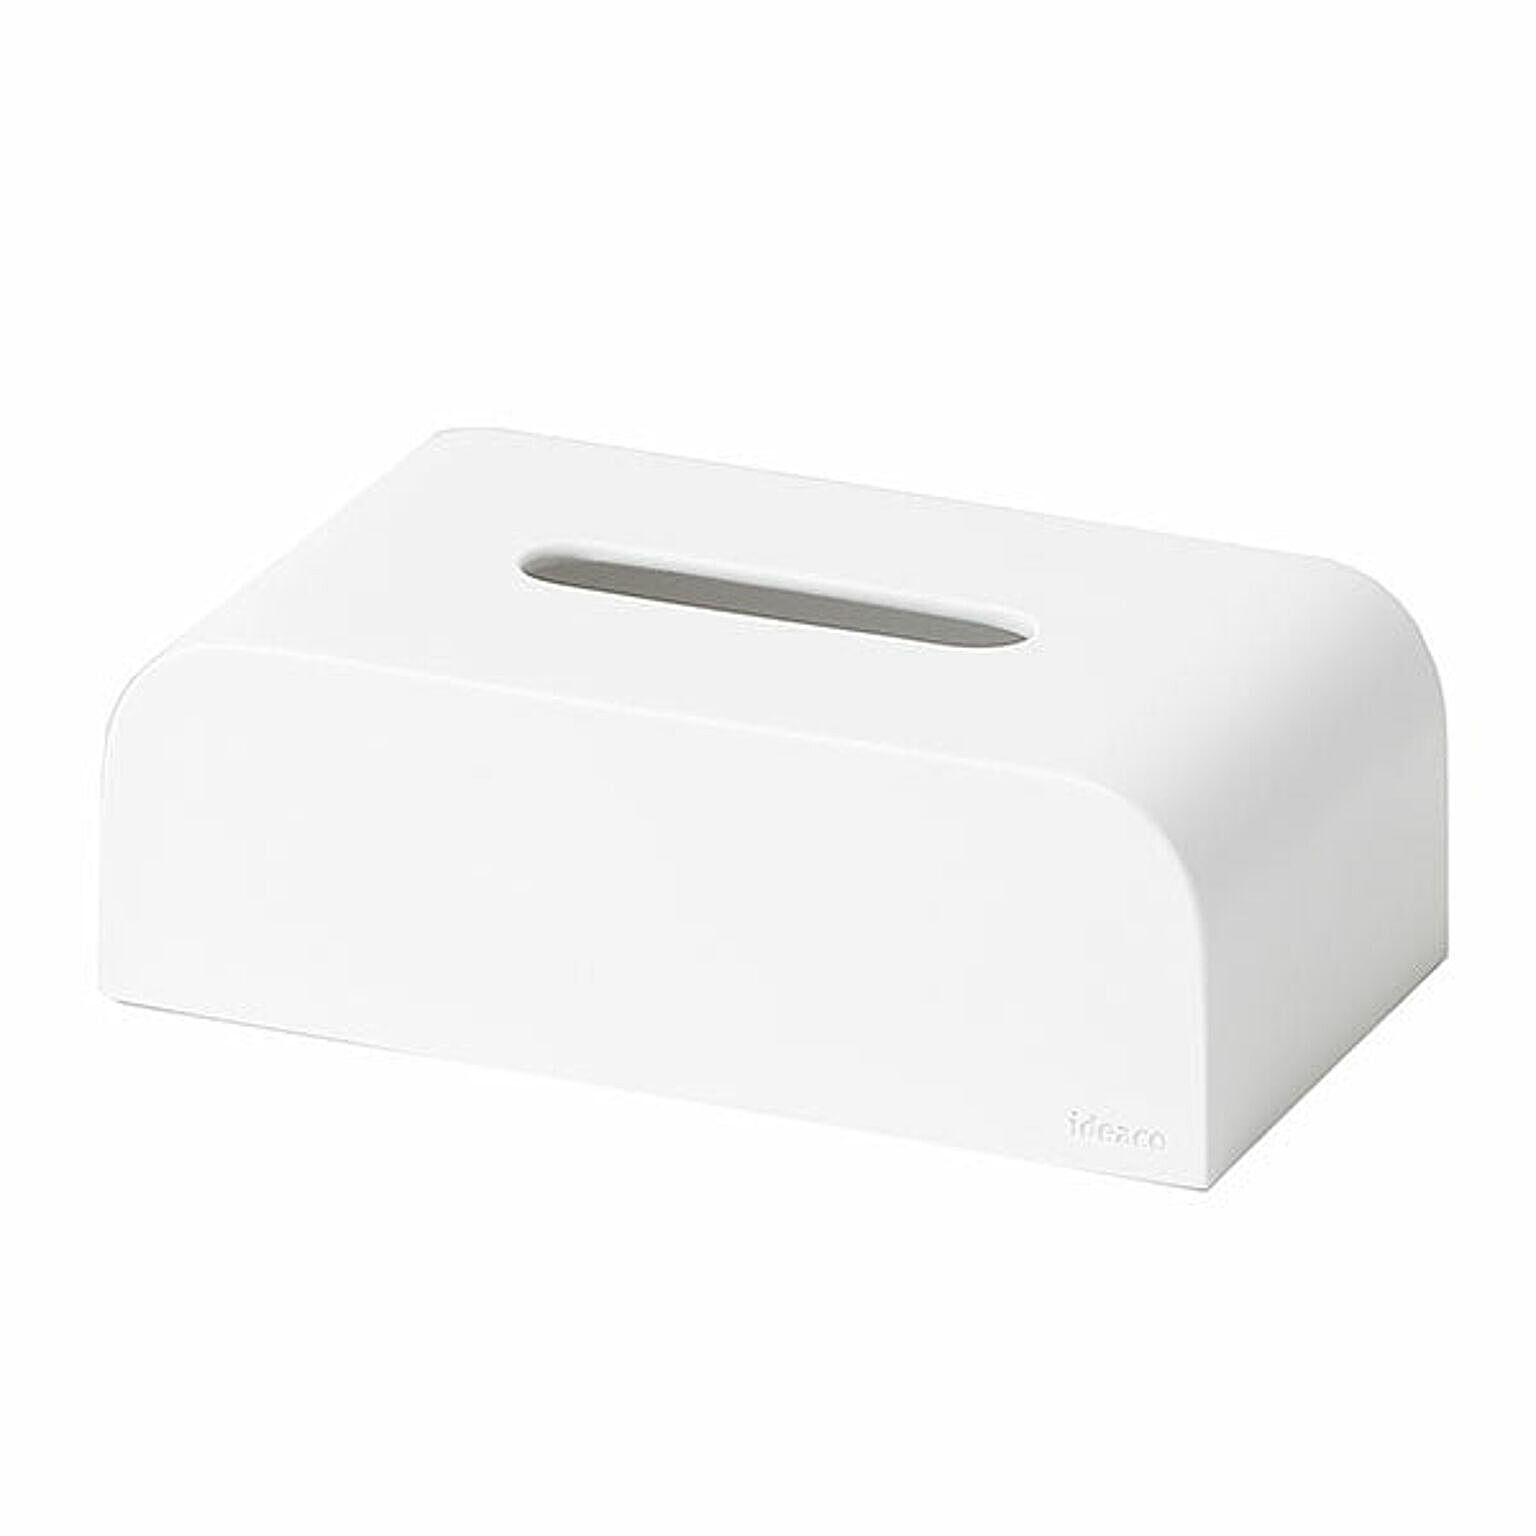 tissue case SP ティッシュケースエスピー ティッシュボックス/ティッシュ収納/ソフトパック専用